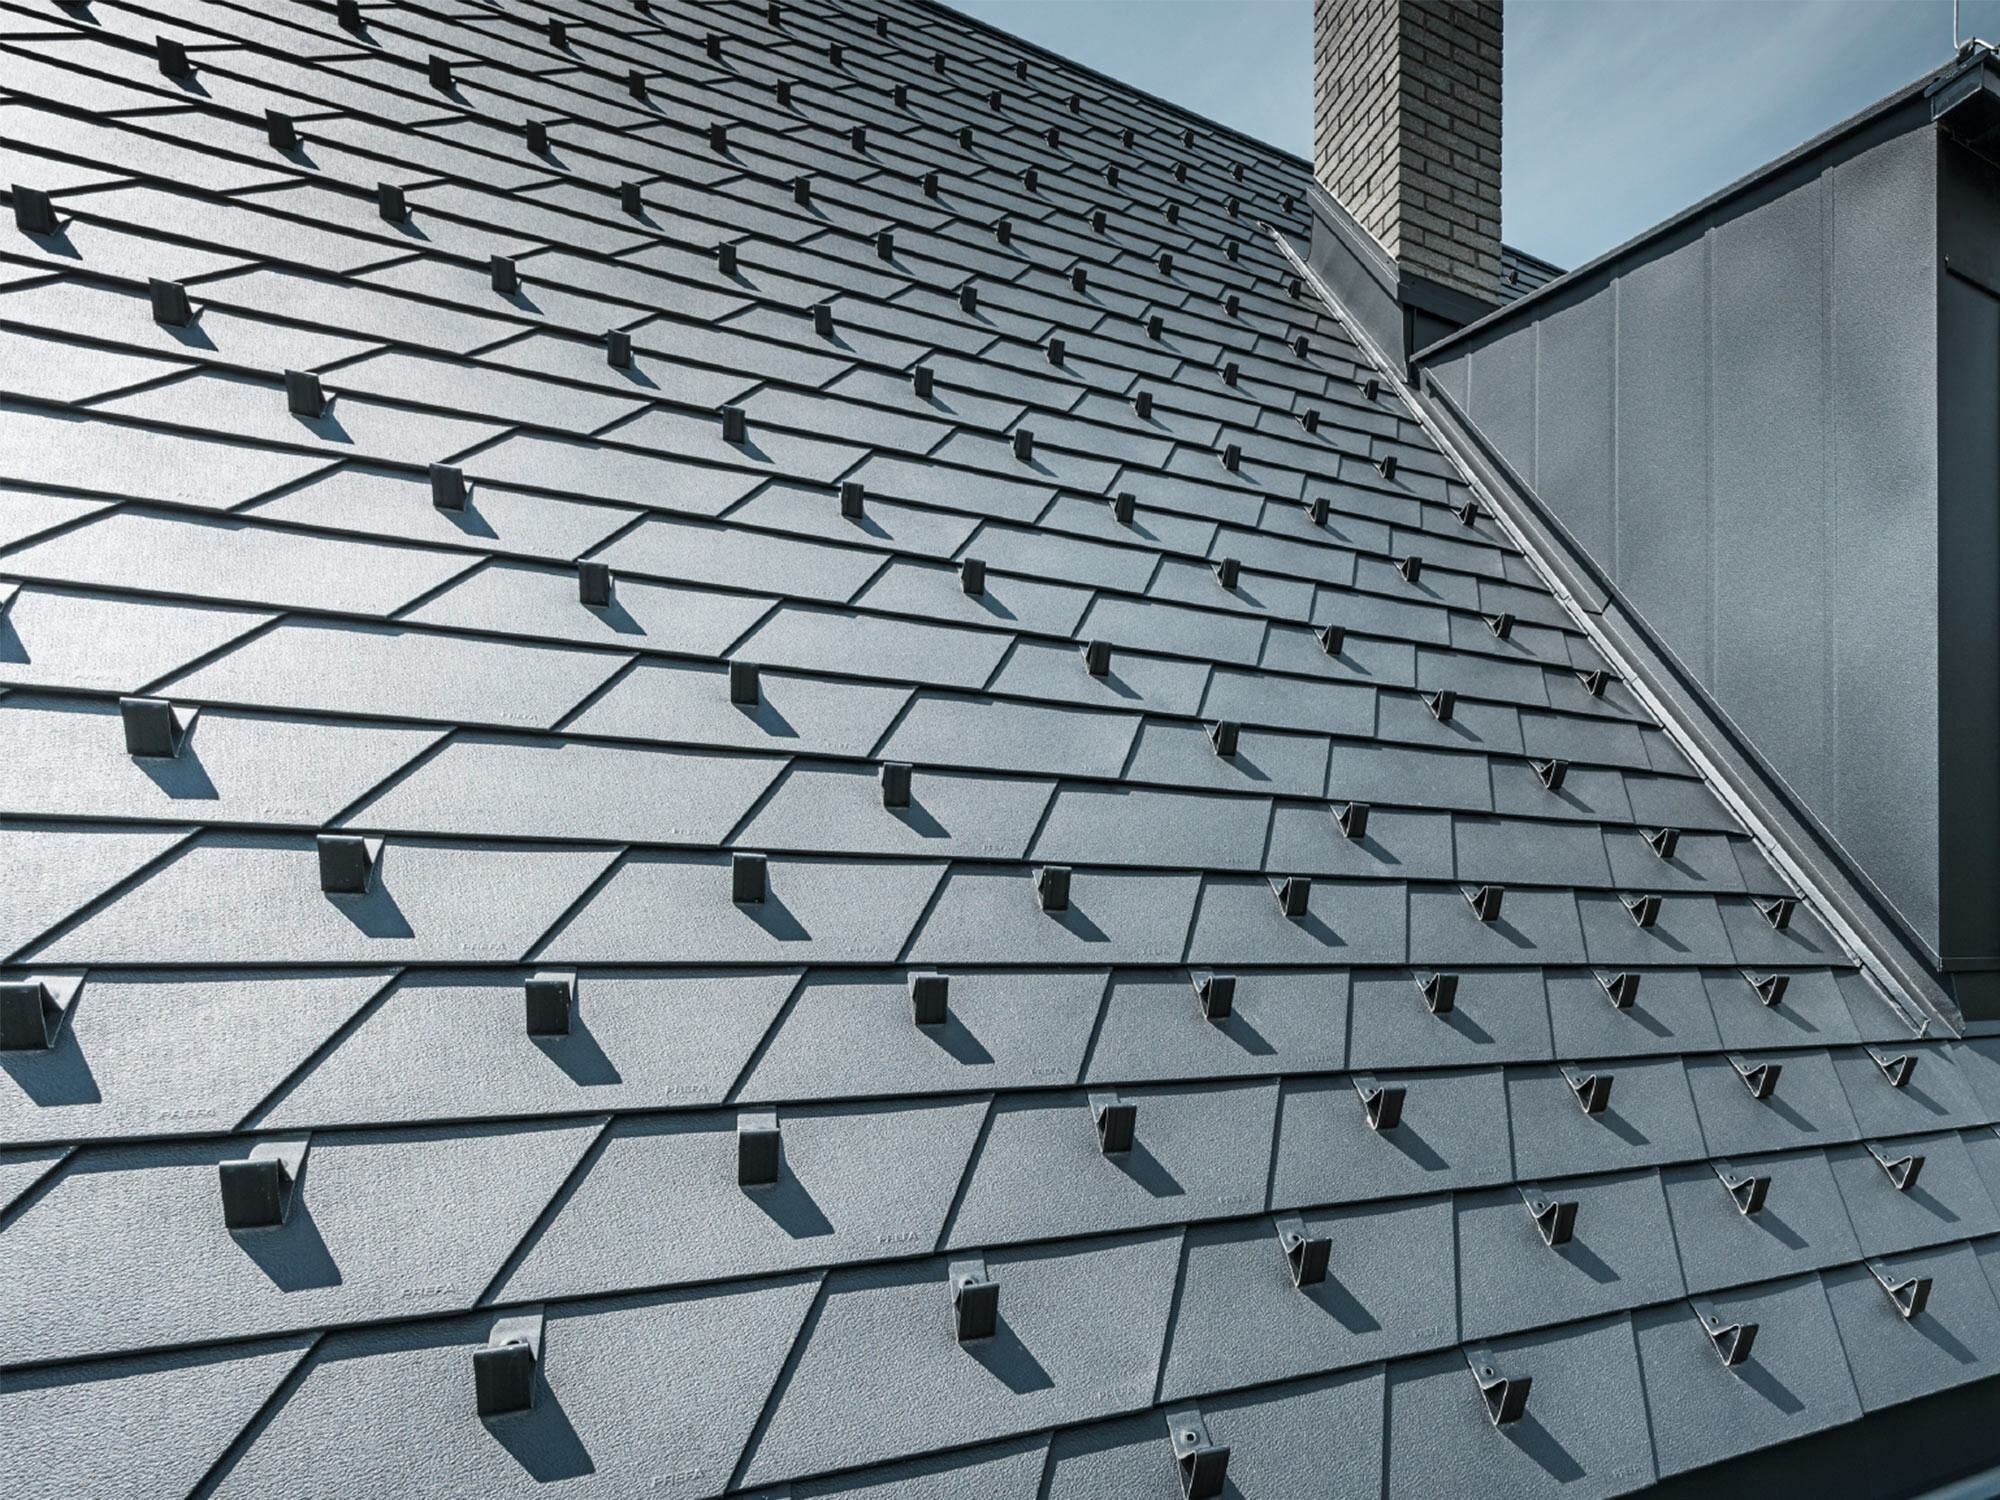 Gerenoveerd dak met PREFA dakschindels in P.10 zwart met sneeuwstoppers, dakkapel bekleed met PREFA aluminium